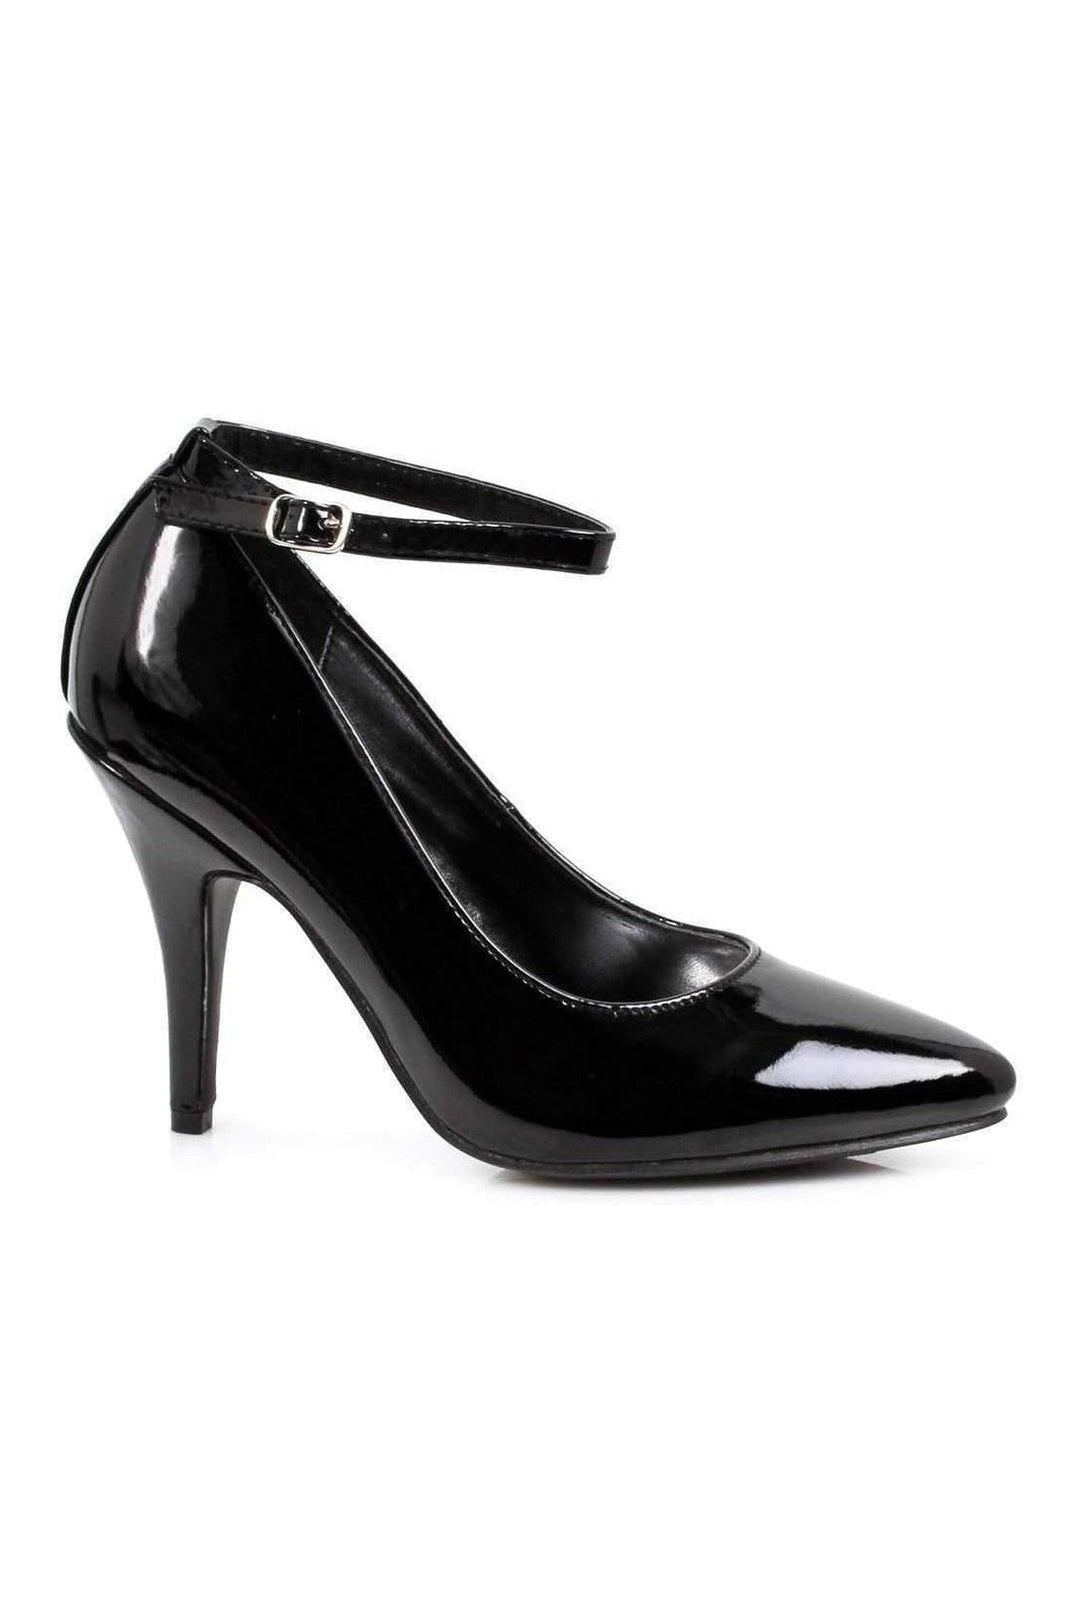 8401 Pump | Black Patent-Ellie Shoes-SEXYSHOES.COM